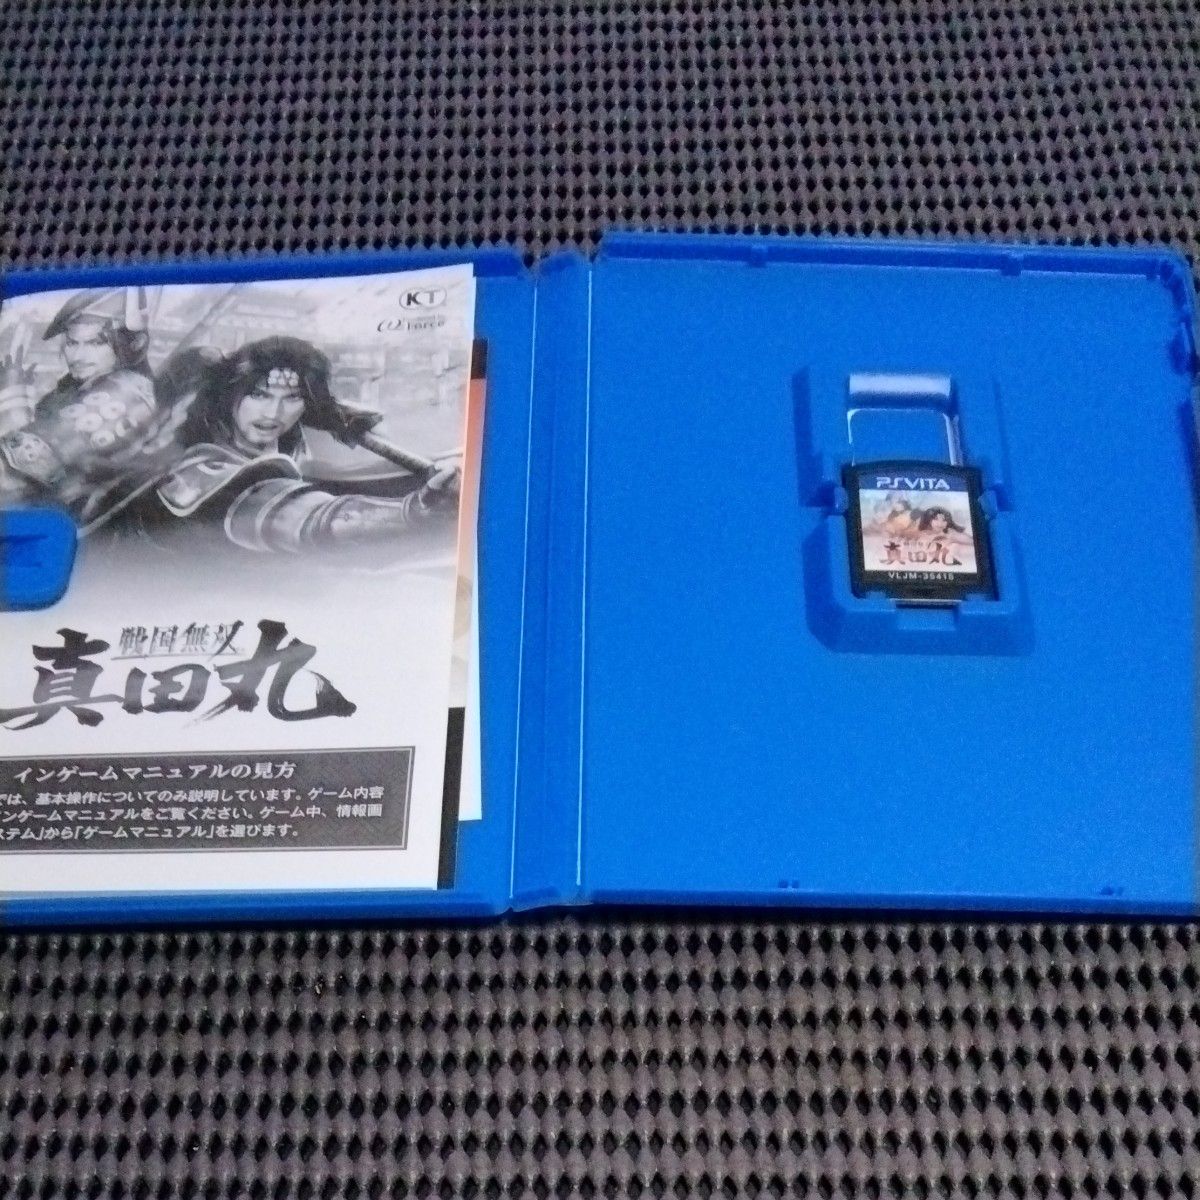 戦国無双真田丸 PS Vitaソフト